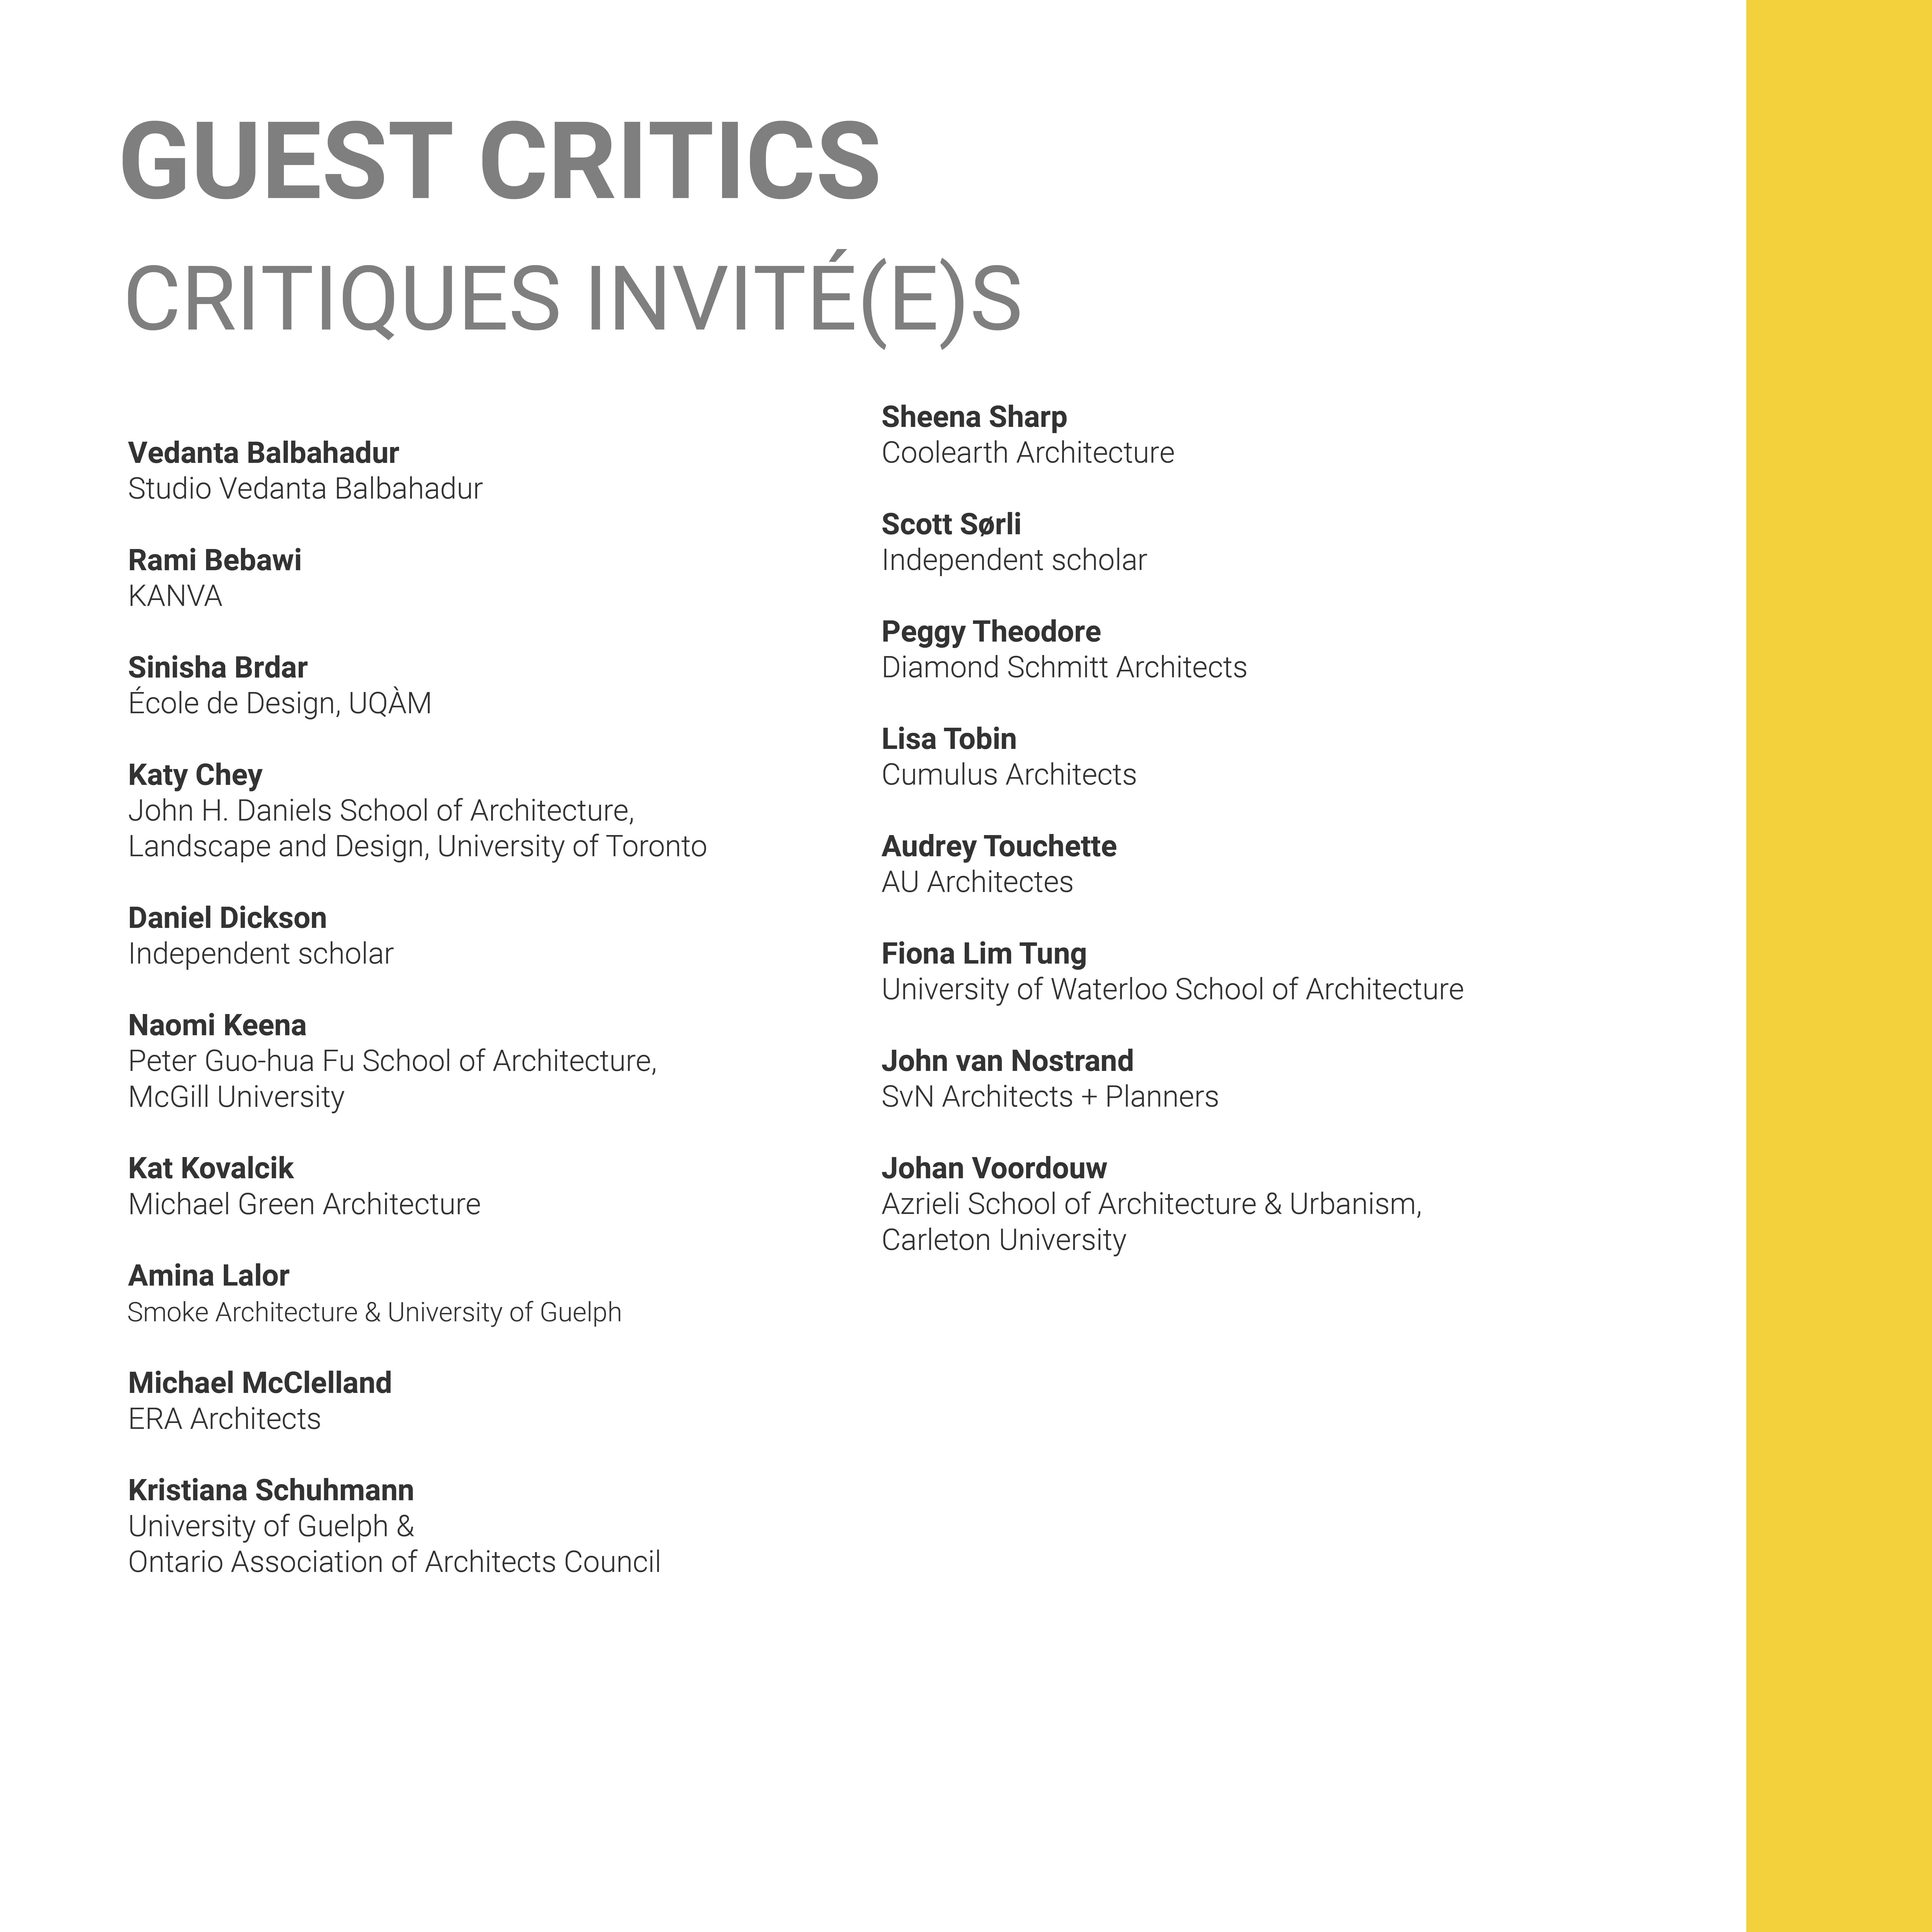 Guest critics